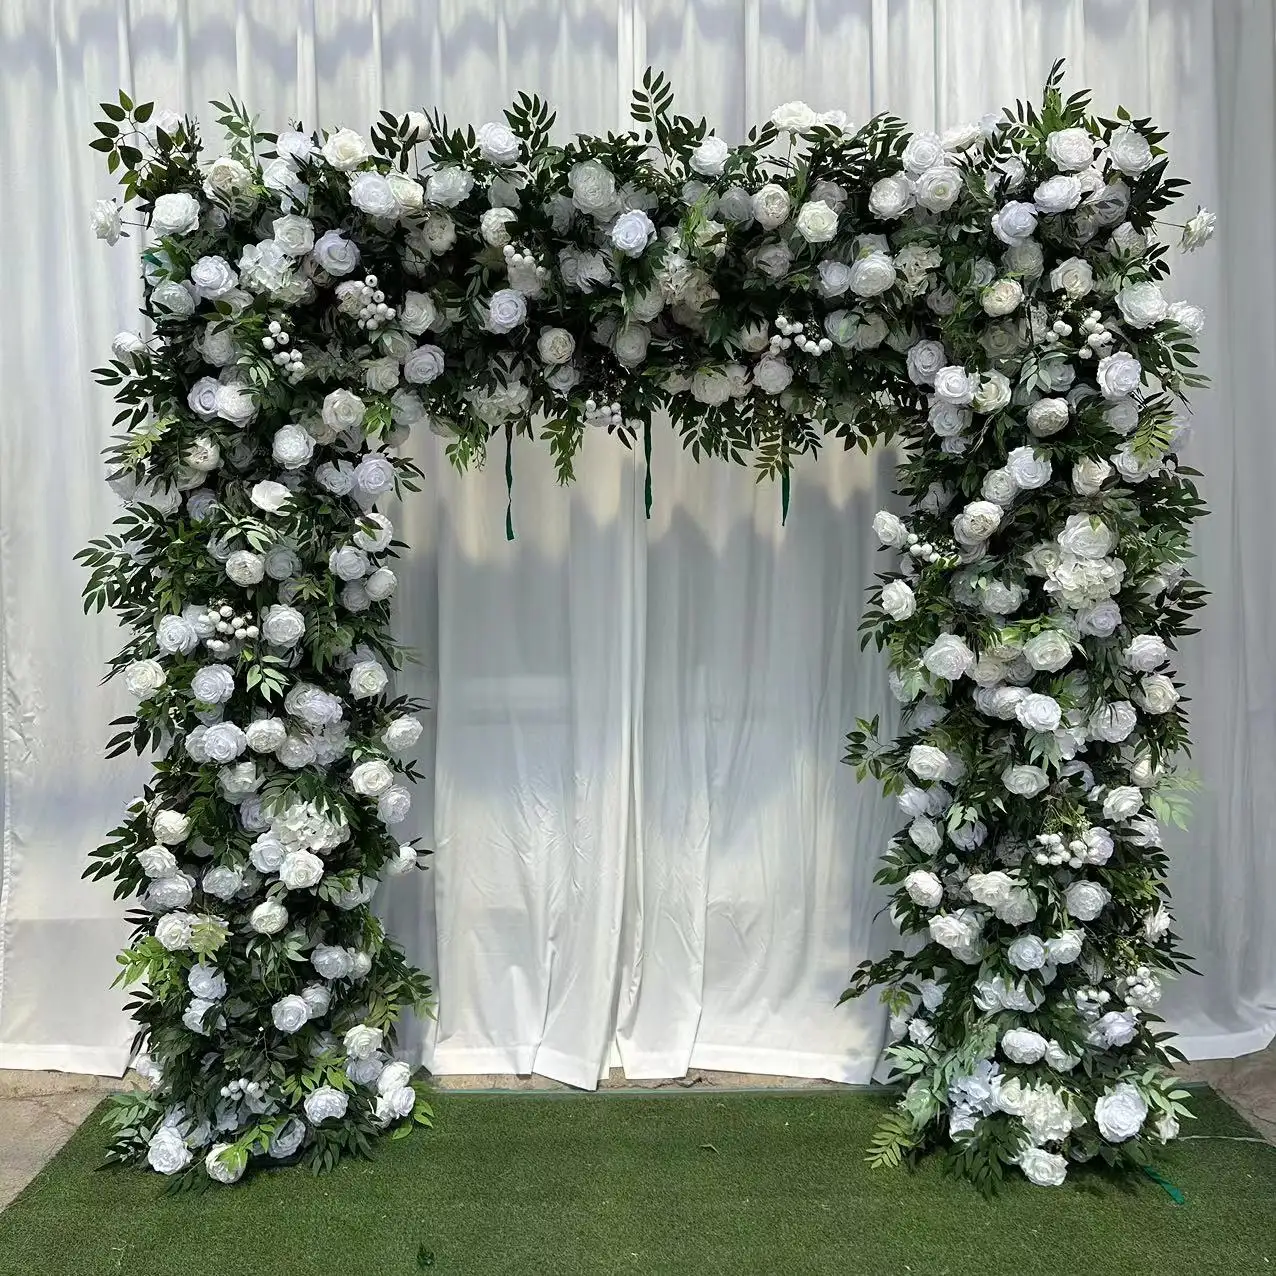 A-FSA018 quadrato artificiale del fiore del fondale di fiori di seta dell'arco di nozze rosa del fiore dell'arco per la decorazione di nozze